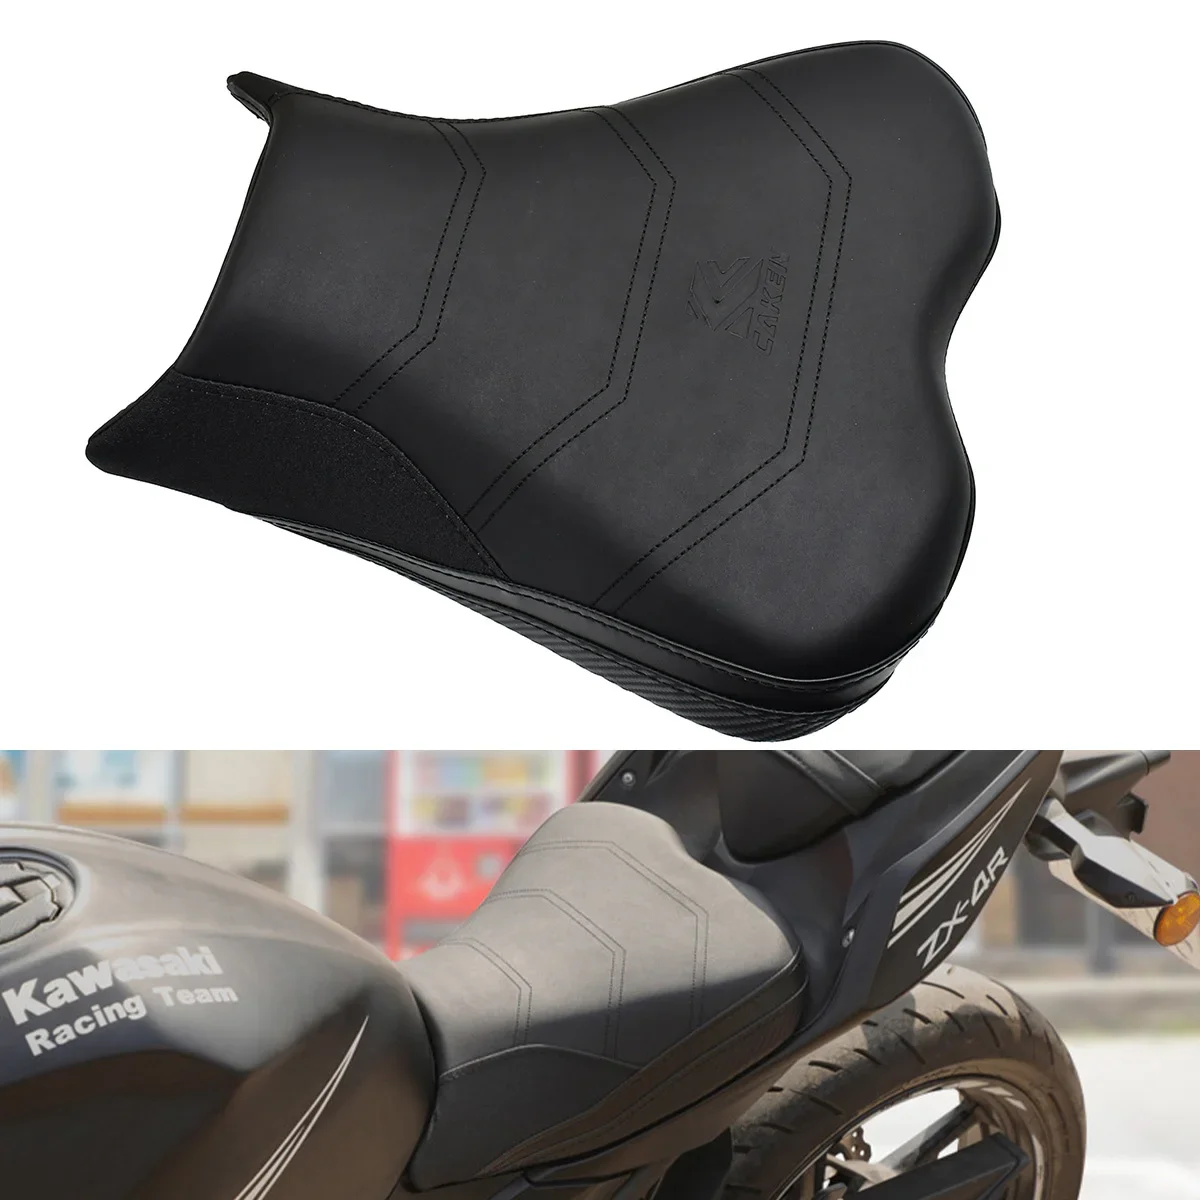 

Motorcycle Accessories Front Rider Driver Seat Saddle Cushion For Kawasaki Ninja400 Ninja 400 Z400 2018 2019 2020 2021 2022 2023